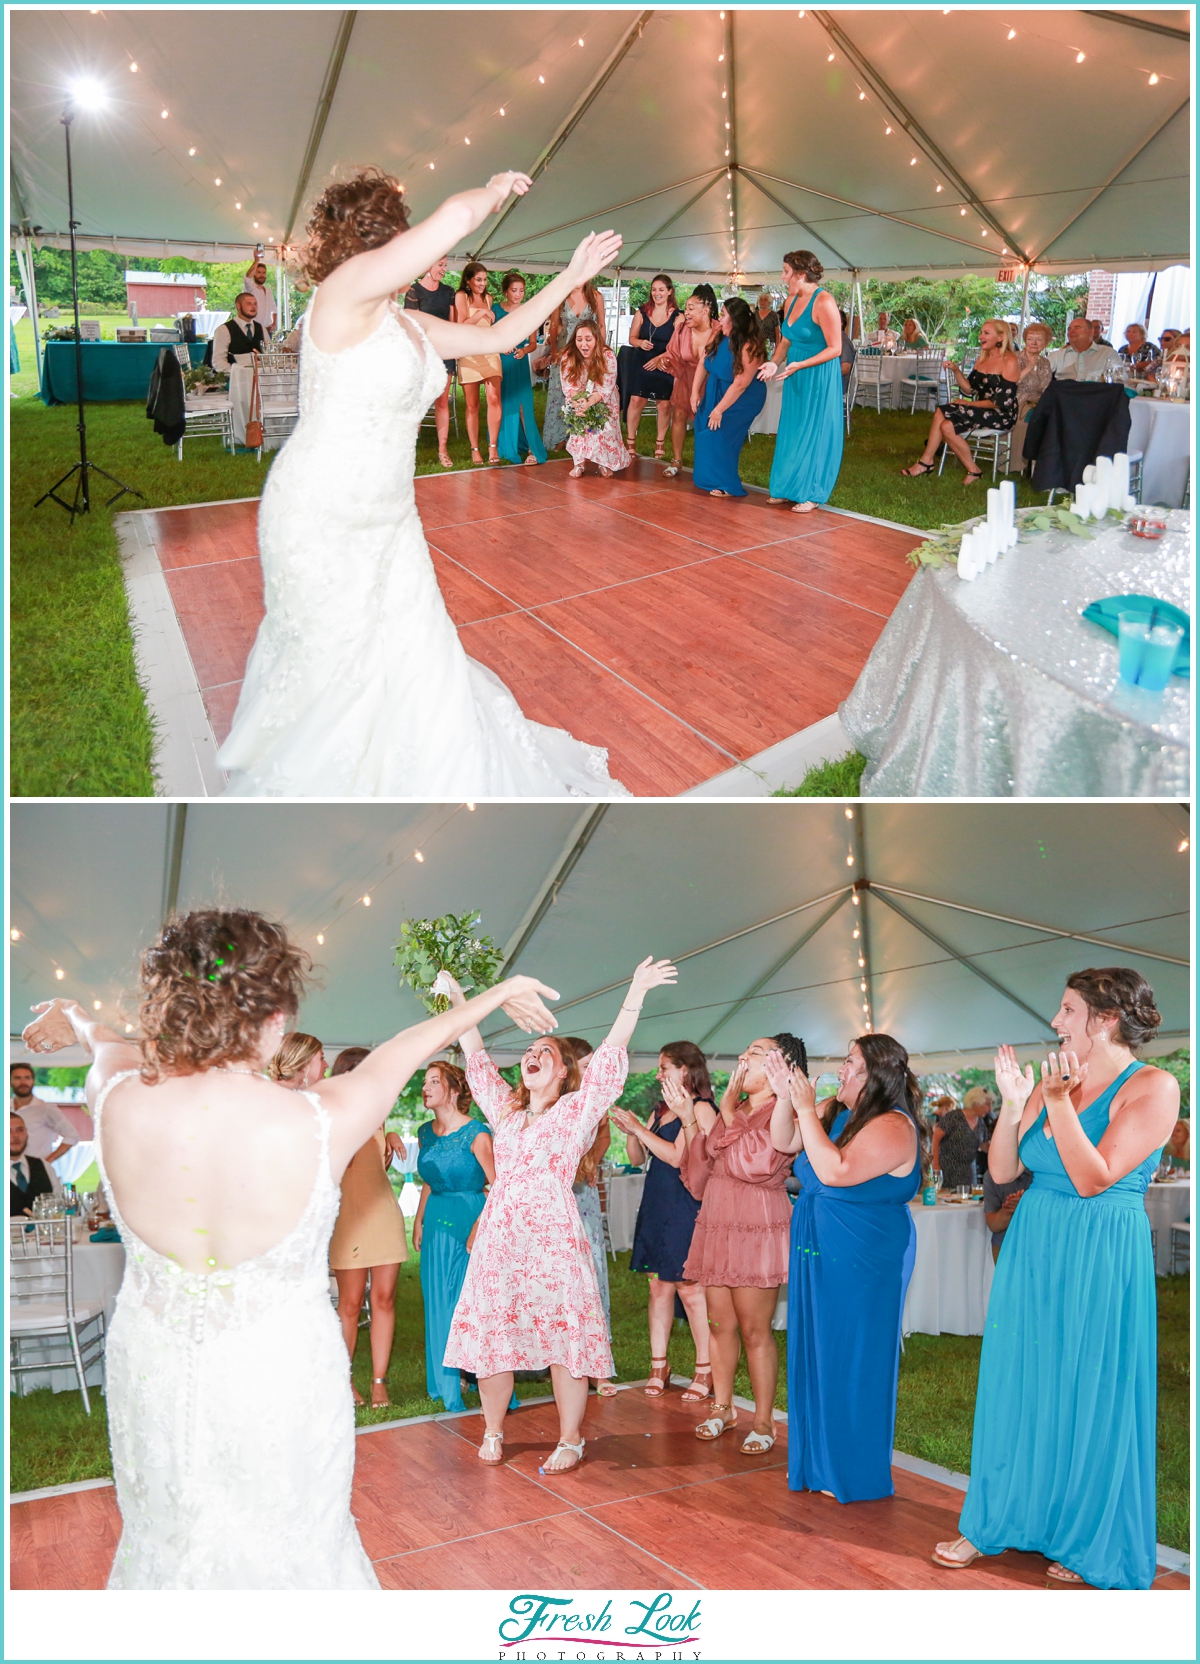 bouquet and garter toss at reception